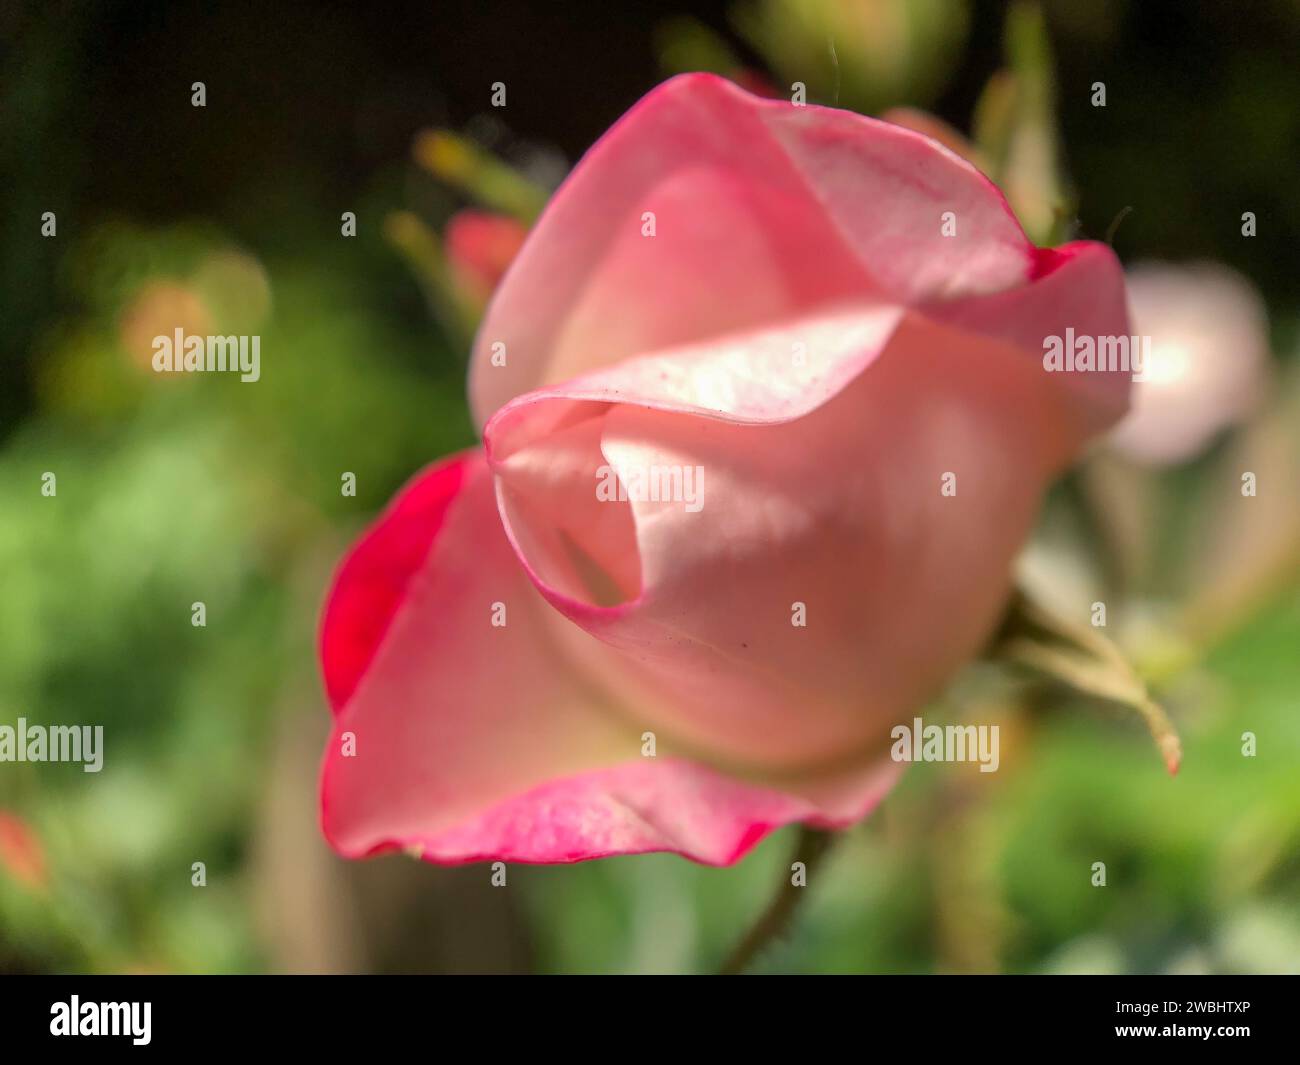 Cette image est un hommage doux au déploiement délicat d'un bourgeon de rose, capturant la transition tendre du bourgeon à la floraison. Les pétales, peints d’un doux blush et bordés d’un rose plus profond, s’enroulent gracieusement les uns autour des autres, formant une spirale naturelle qui mène l’œil vers le cœur de la rose. La toile de fond est un flou rêvé de greens de jardin, créant une scène tranquille pour le dévoilement tranquille de la rose. Blush Embrace : le tendre déroulement d'une Rose. Photo de haute qualité Banque D'Images